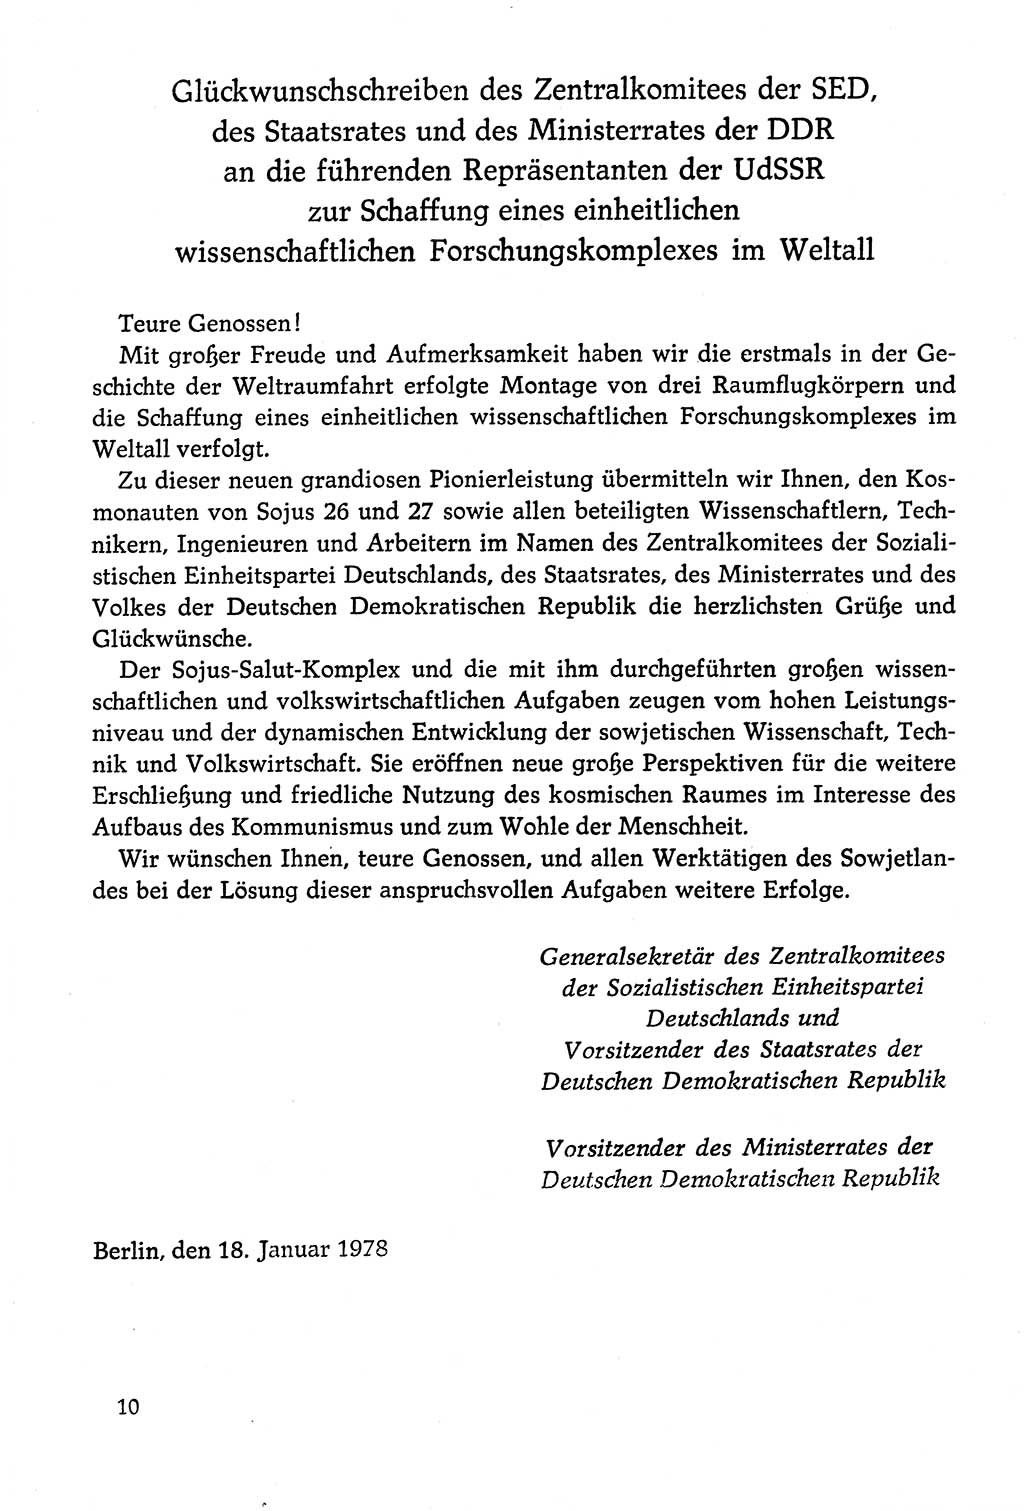 Dokumente der Sozialistischen Einheitspartei Deutschlands (SED) [Deutsche Demokratische Republik (DDR)] 1978-1979, Seite 10 (Dok. SED DDR 1978-1979, S. 10)